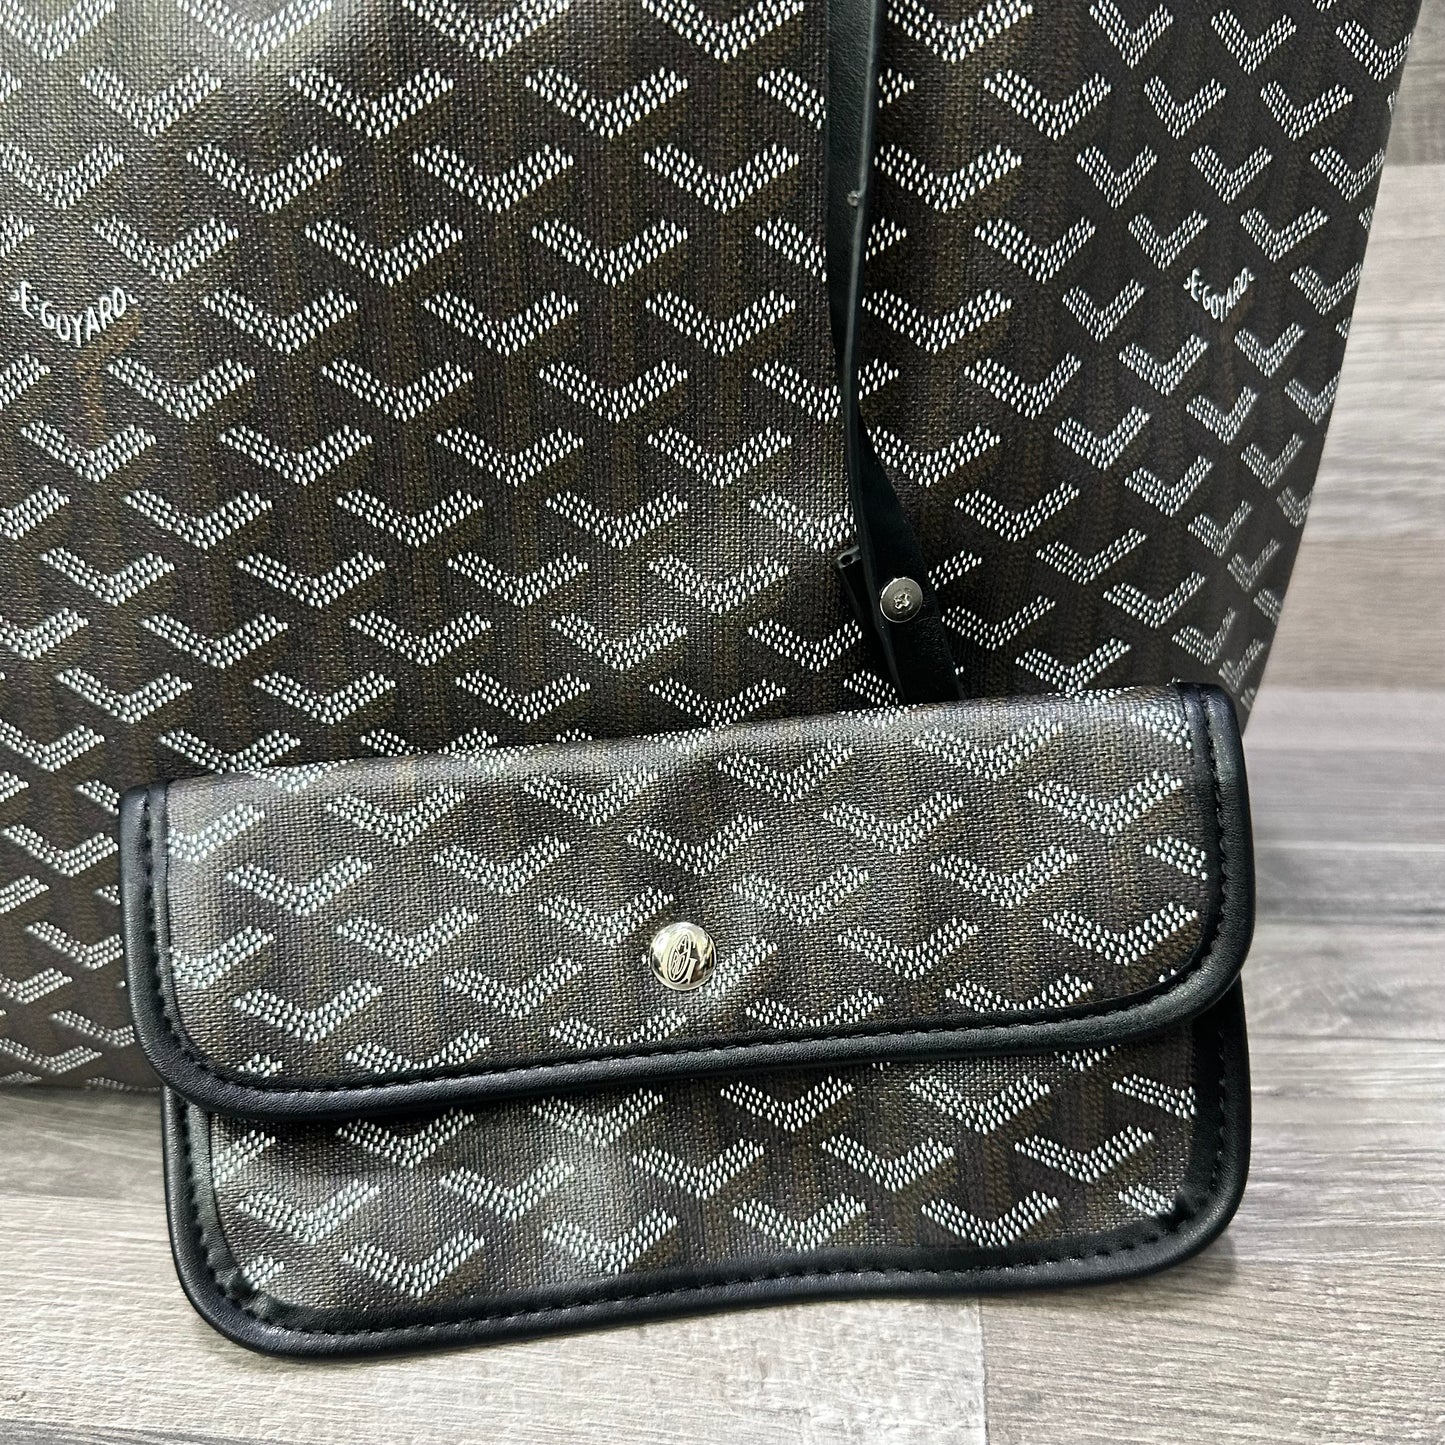 Goyard Handbag Total Black bags